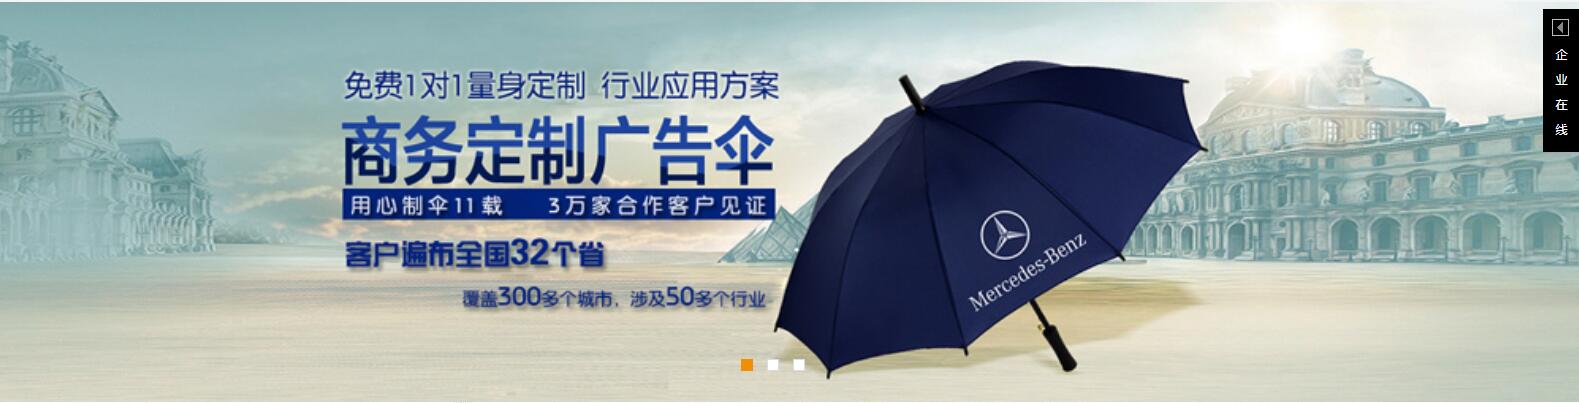 珠海雨伞批发、汕头雨伞批发价格、汕头雨伞批发厂